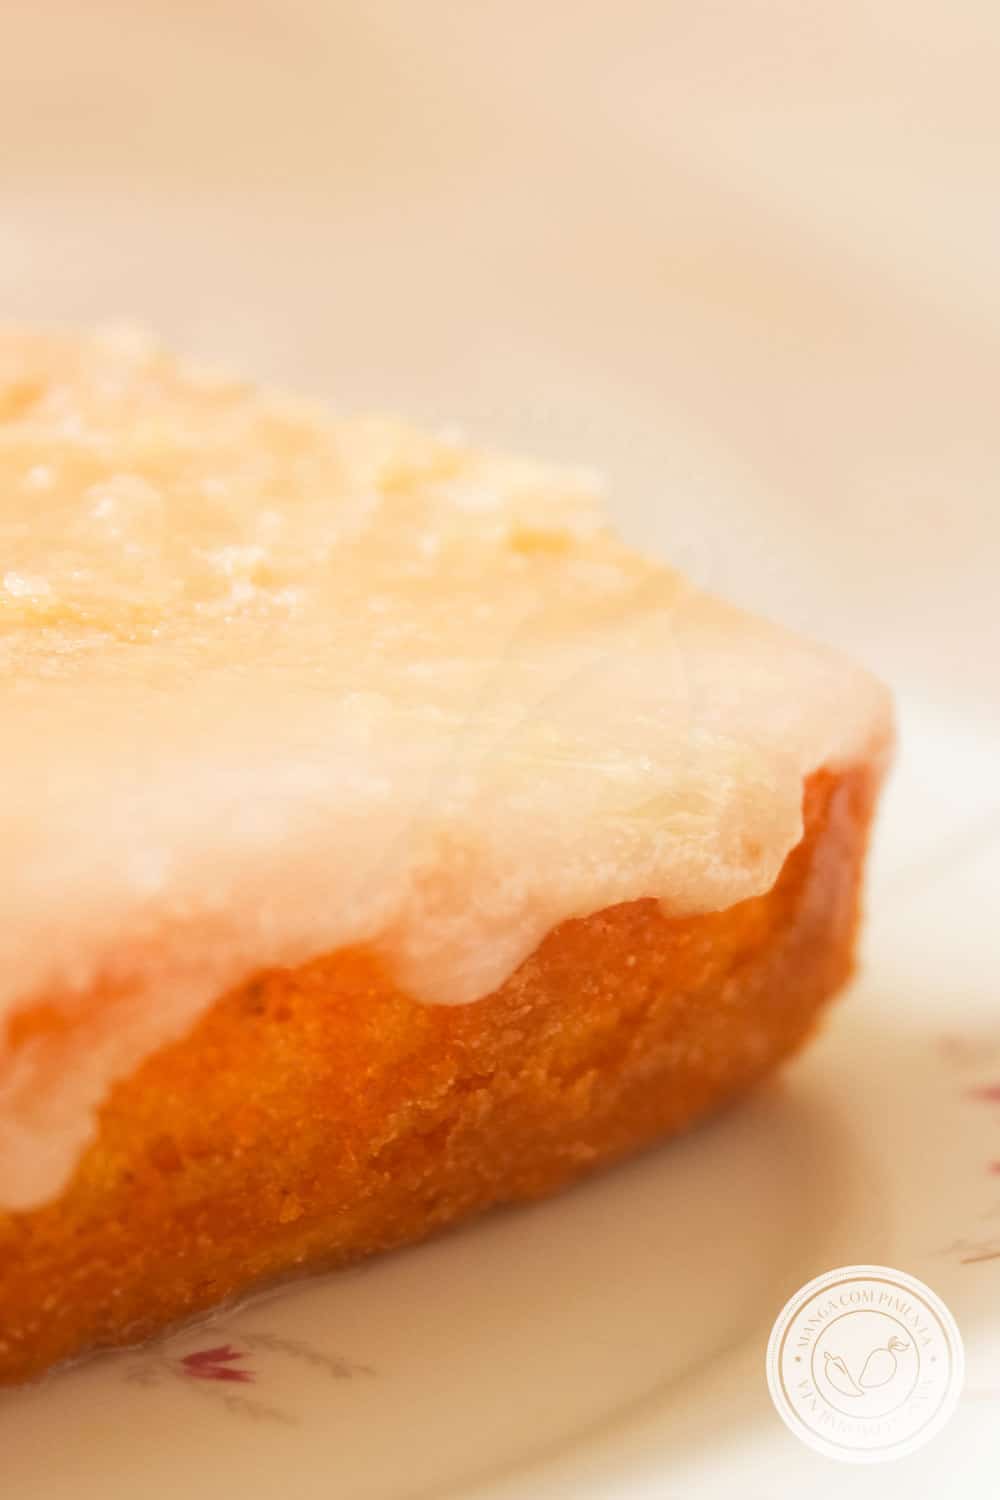 Receita do Bolo de Limão da Rita Lobo - bolo fofinho com calda de açúcar perfeito para o café da tarde